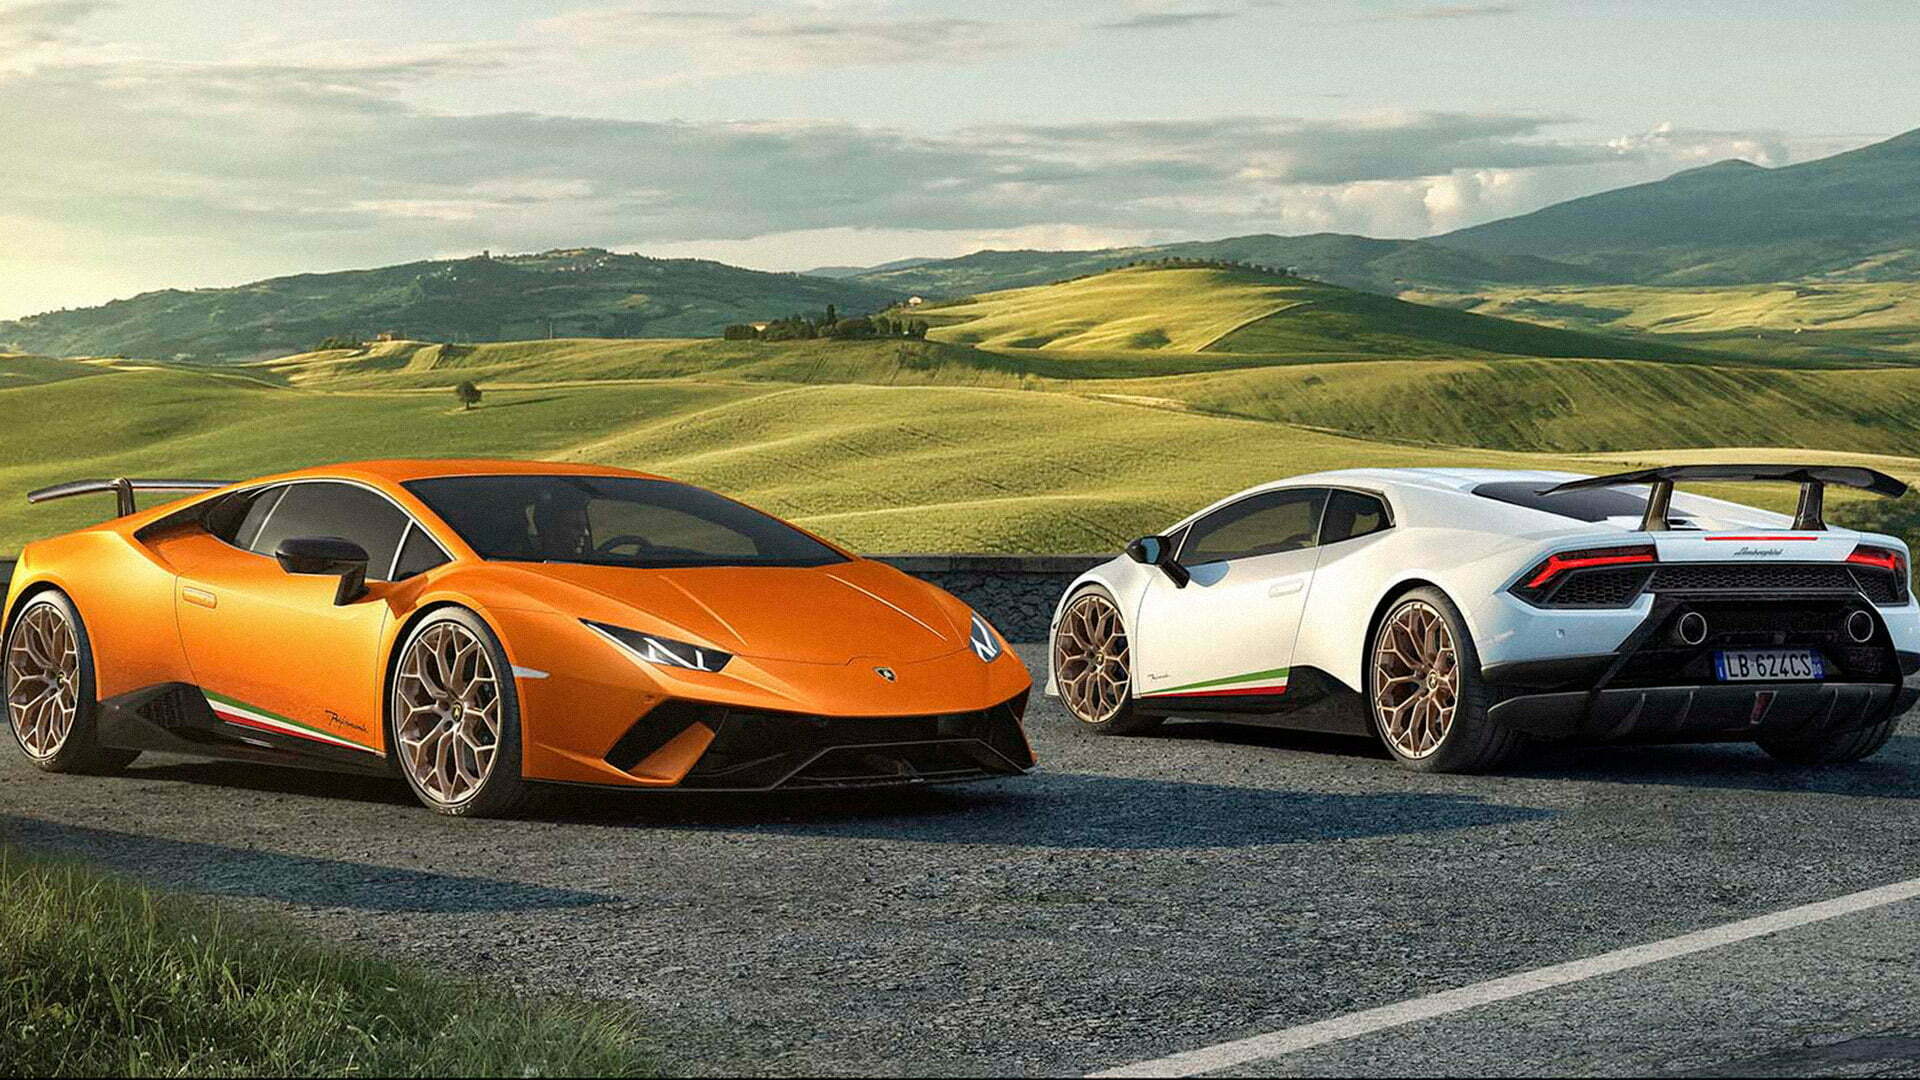 LamborghiniPerformante_TheGridAsia_CoverPicture.jpg